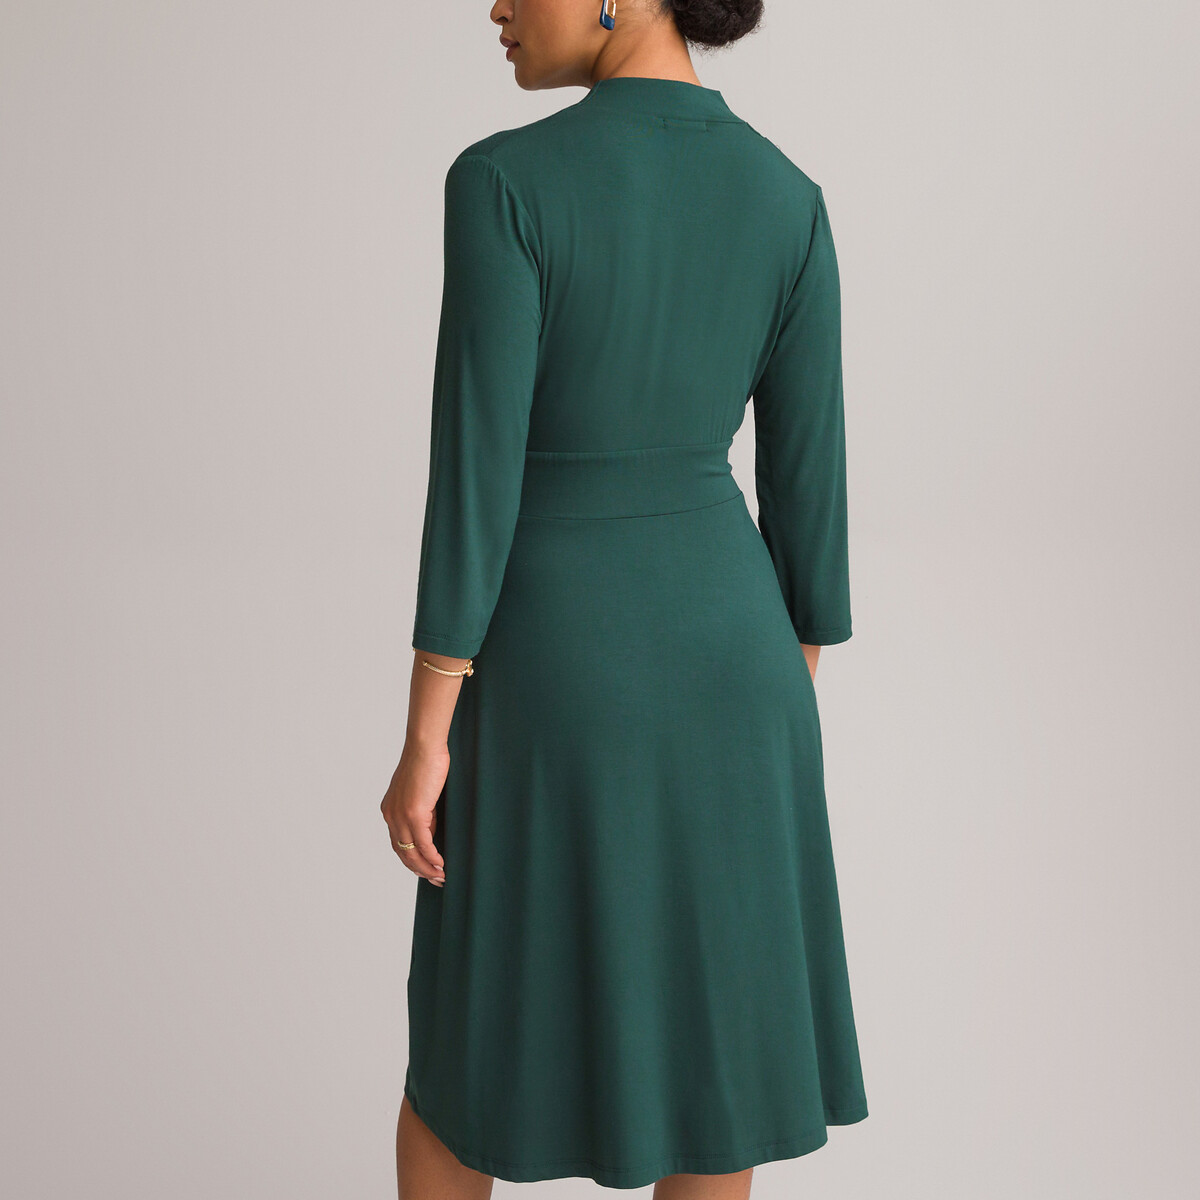 Платье ANNE WEYBURN Платье Расклешенное из струящегося трикотажа с рукавами 34 54 зеленый, размер 54 - фото 4